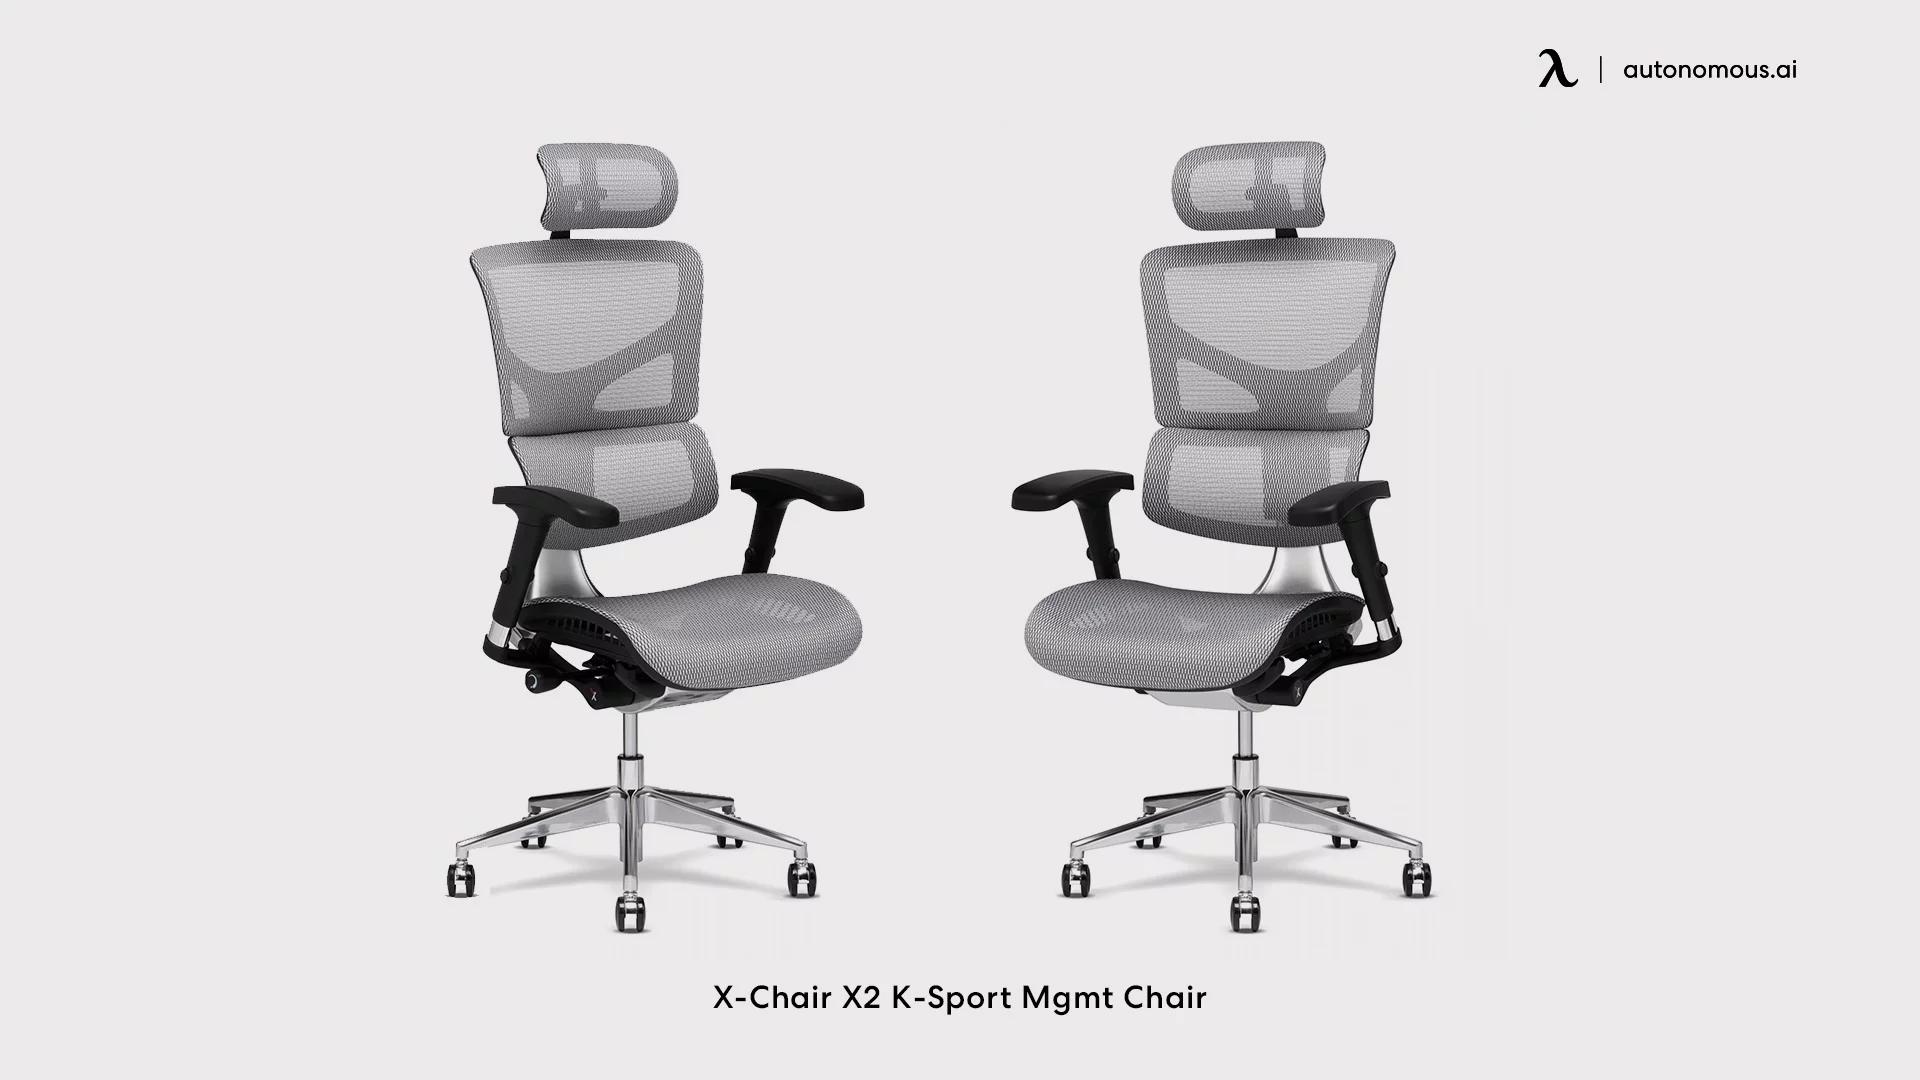 X-Chair X2 K-Sport Chair